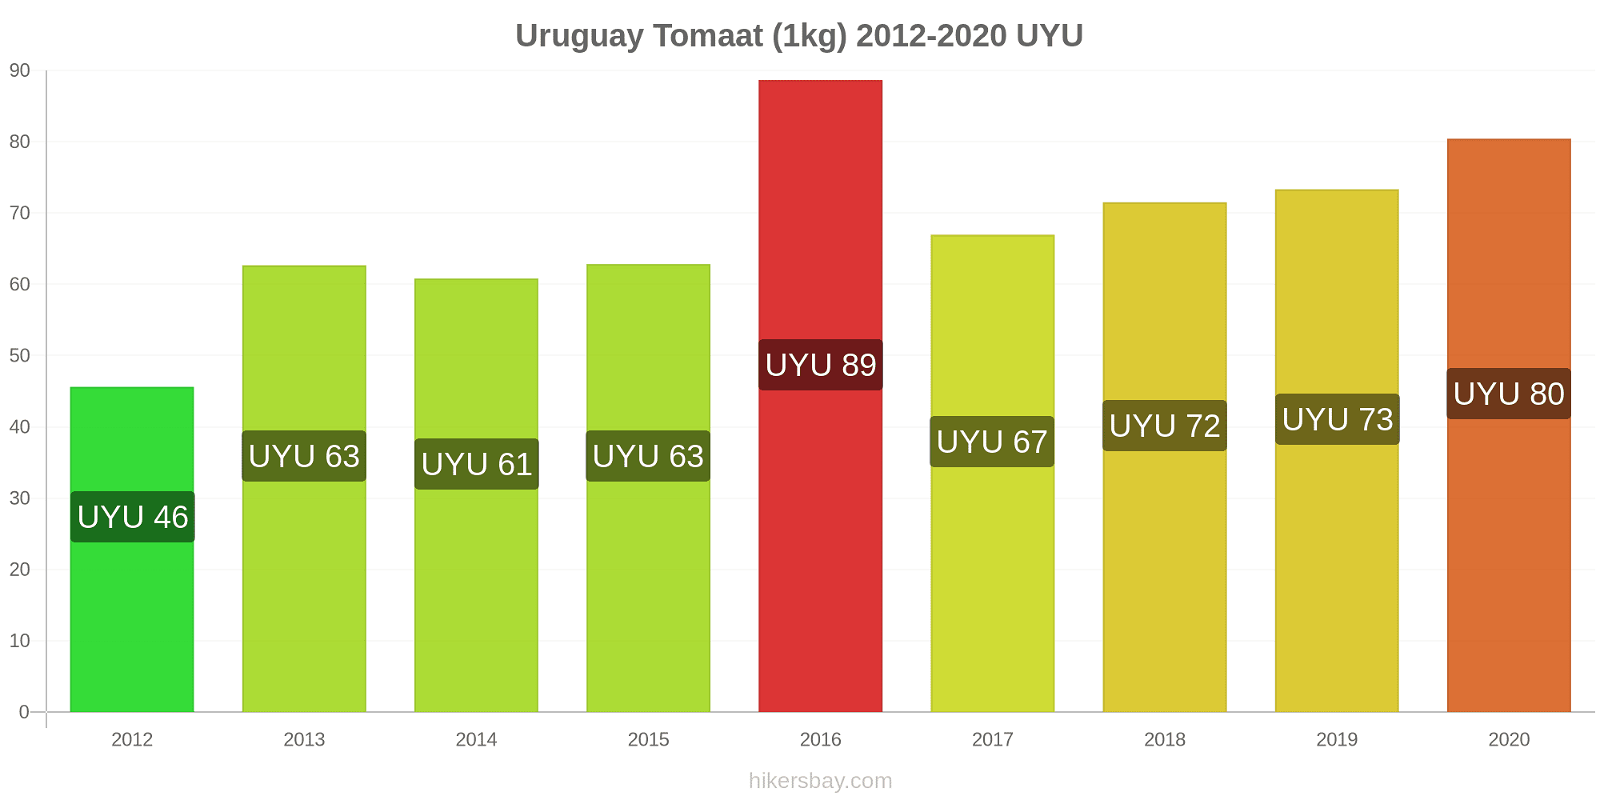 Uruguay prijswijzigingen Tomaat (1kg) hikersbay.com